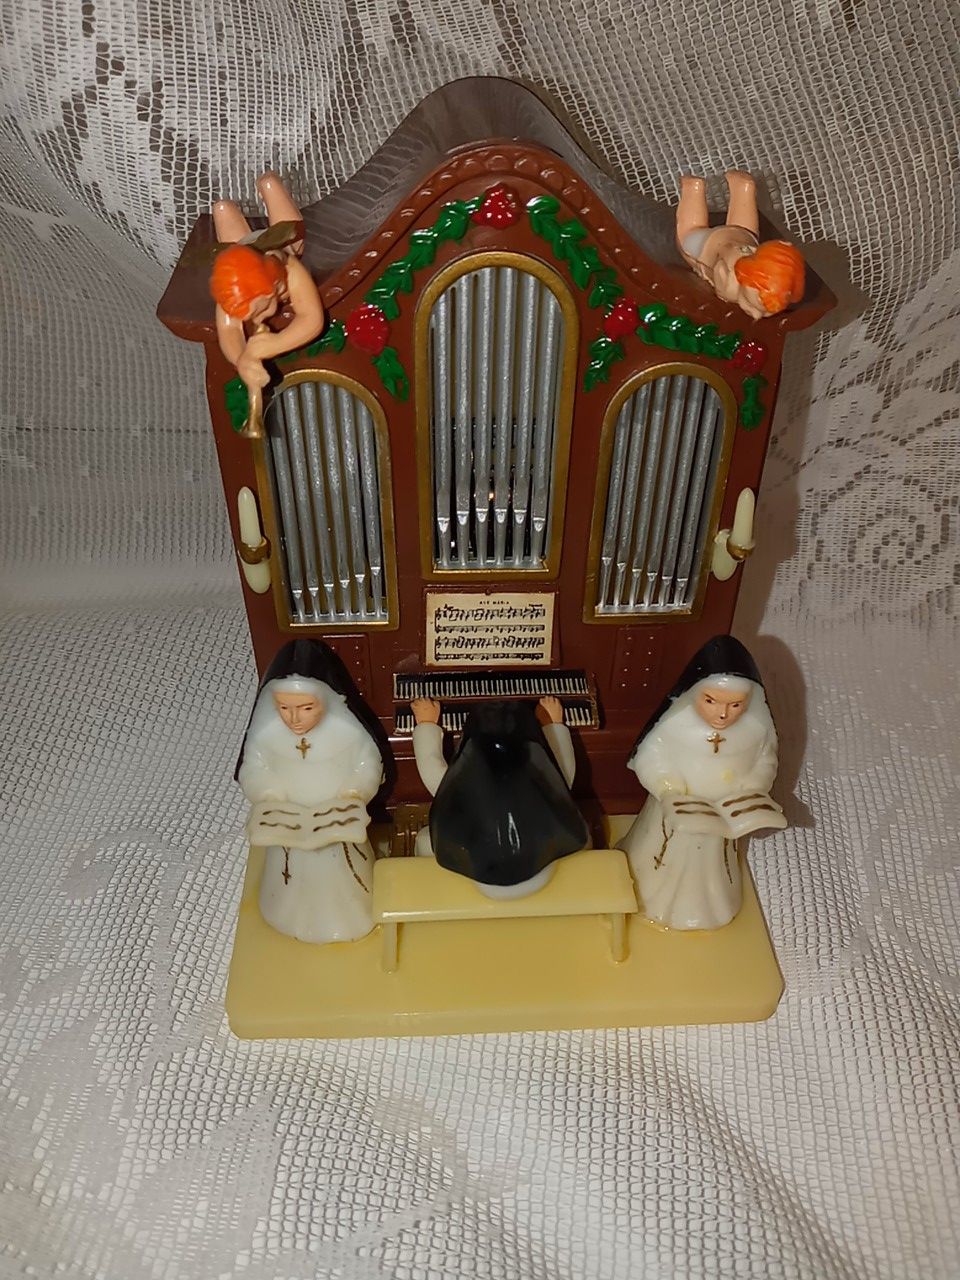 Vintage music box nuns playing Church organ hard plastic made in Hong Kong